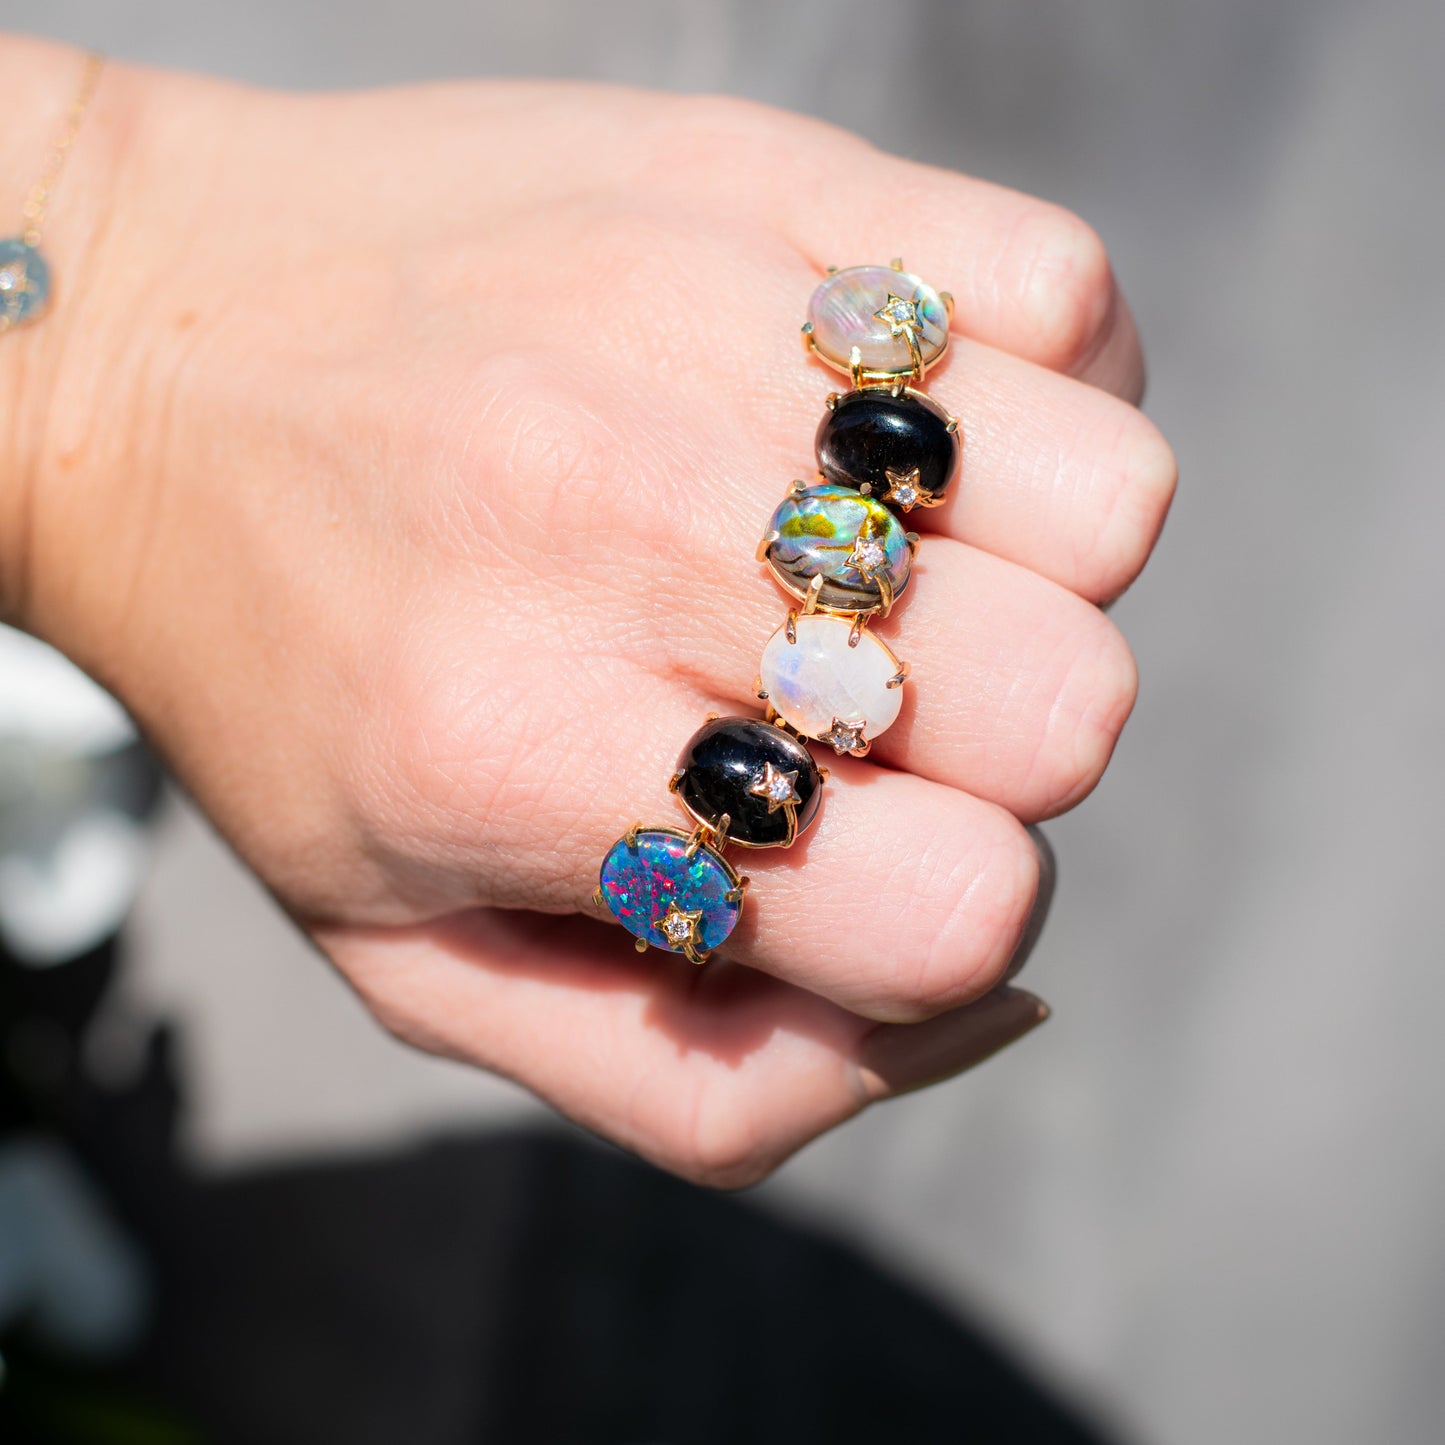 Mini Galaxy Australian Opal Ring